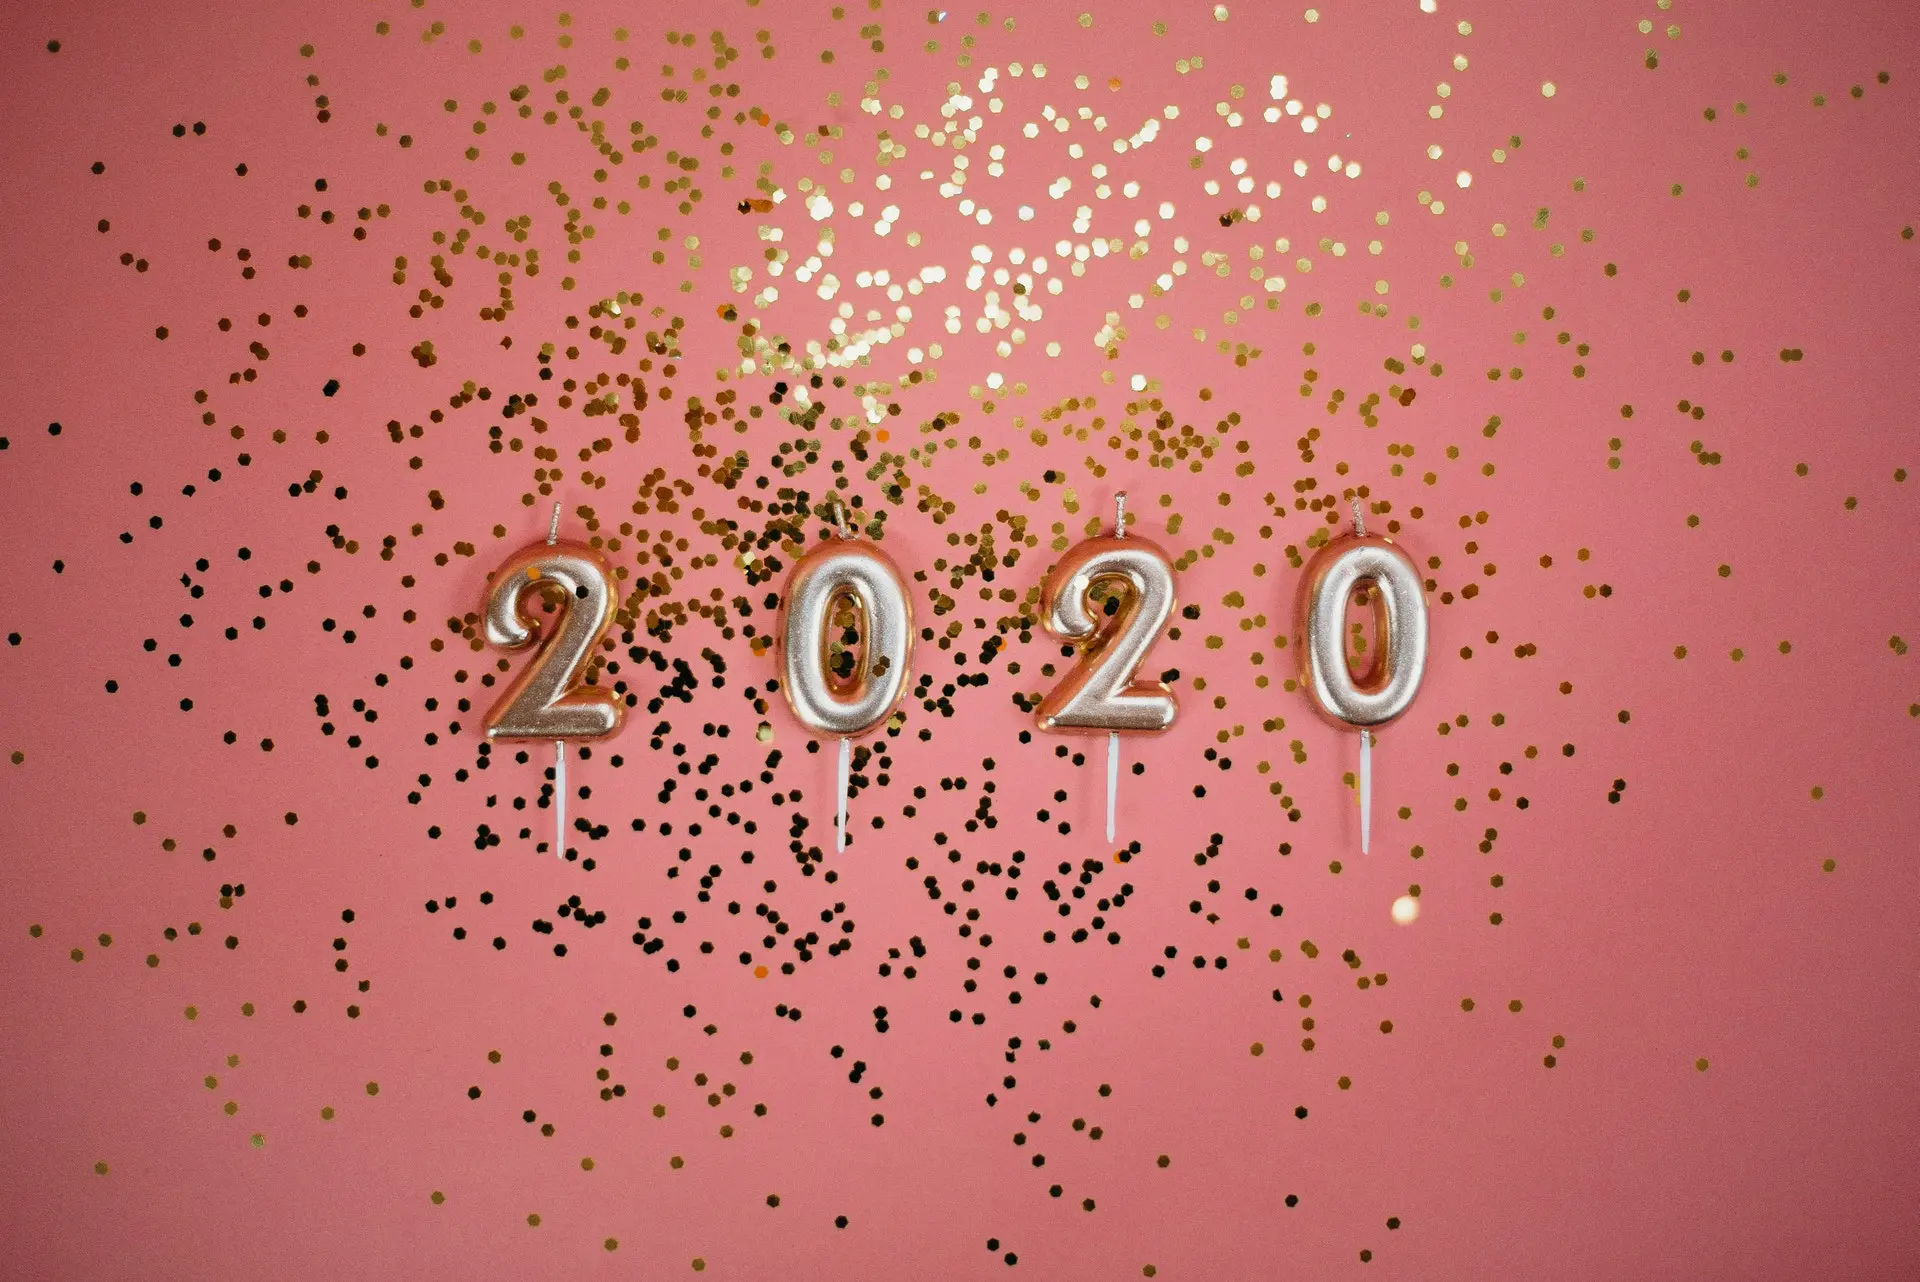 Melinda V Lee LIV Sothebys Winter Park New Year 2020